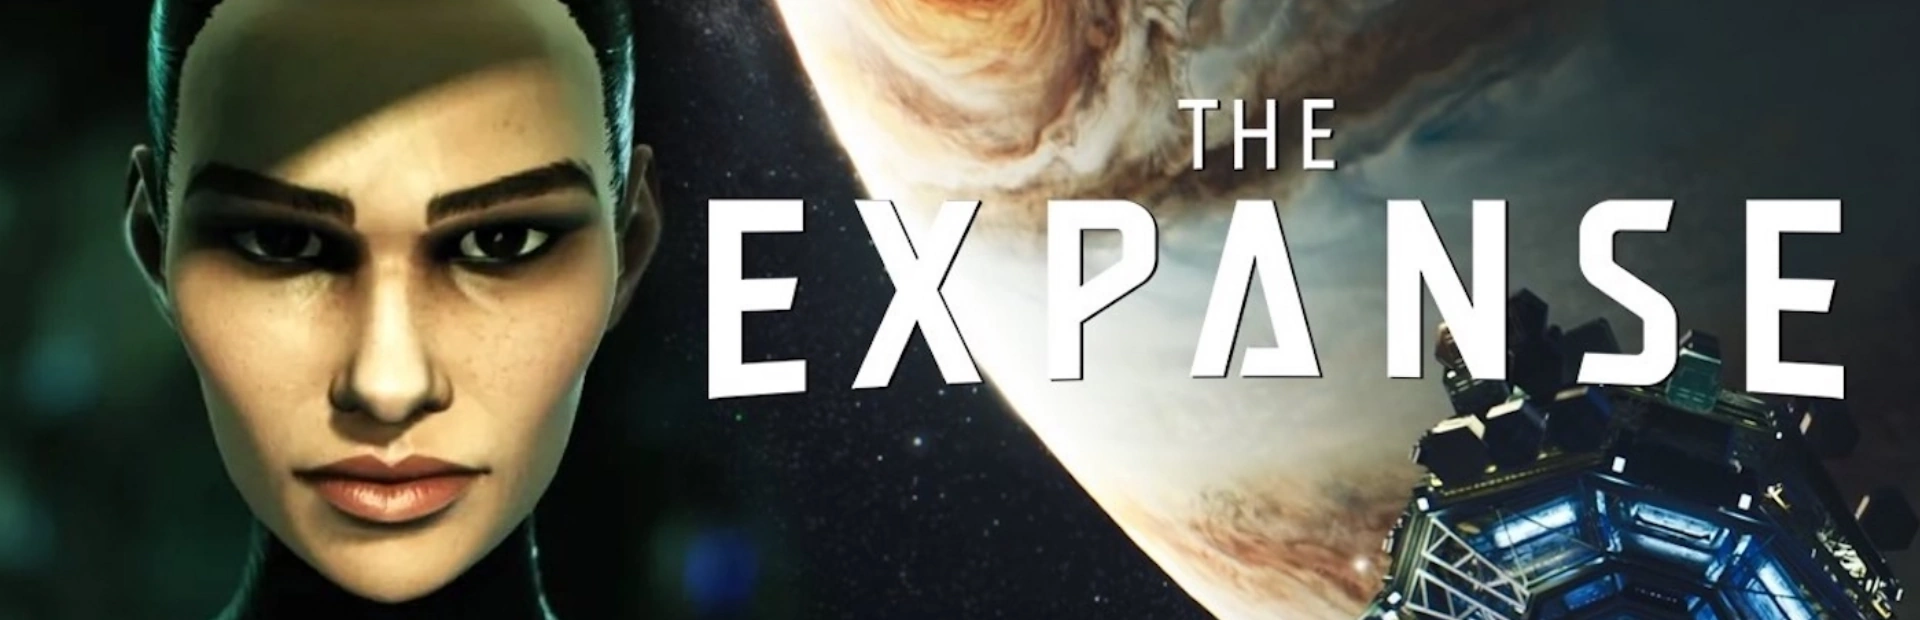 دانلود بازی The Expanse برای کامپیوتر | گیمباتو